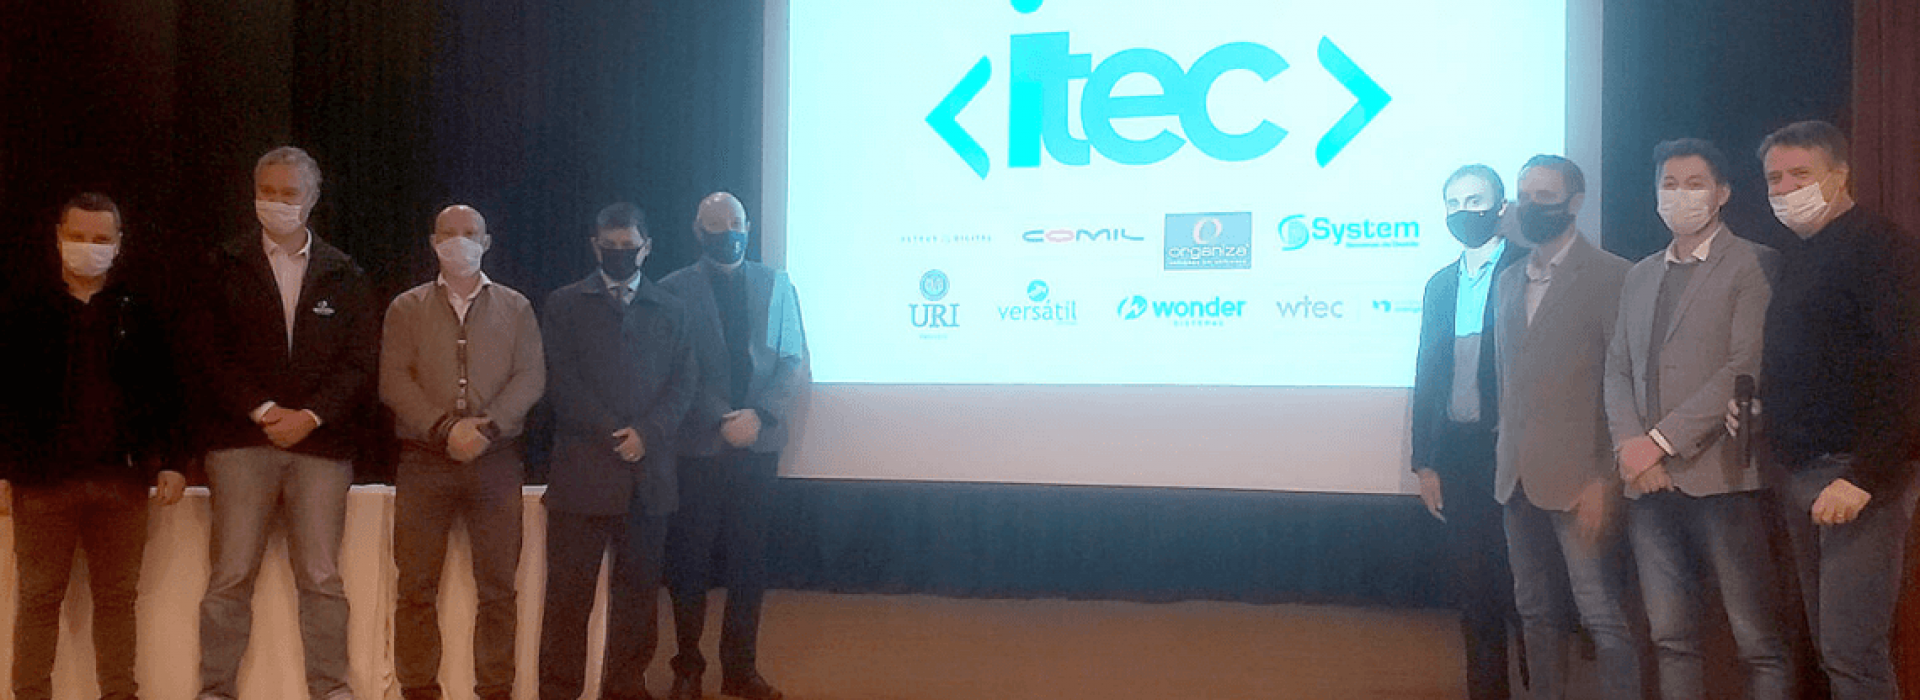 System marca presença no lançamento oficial do iTEC